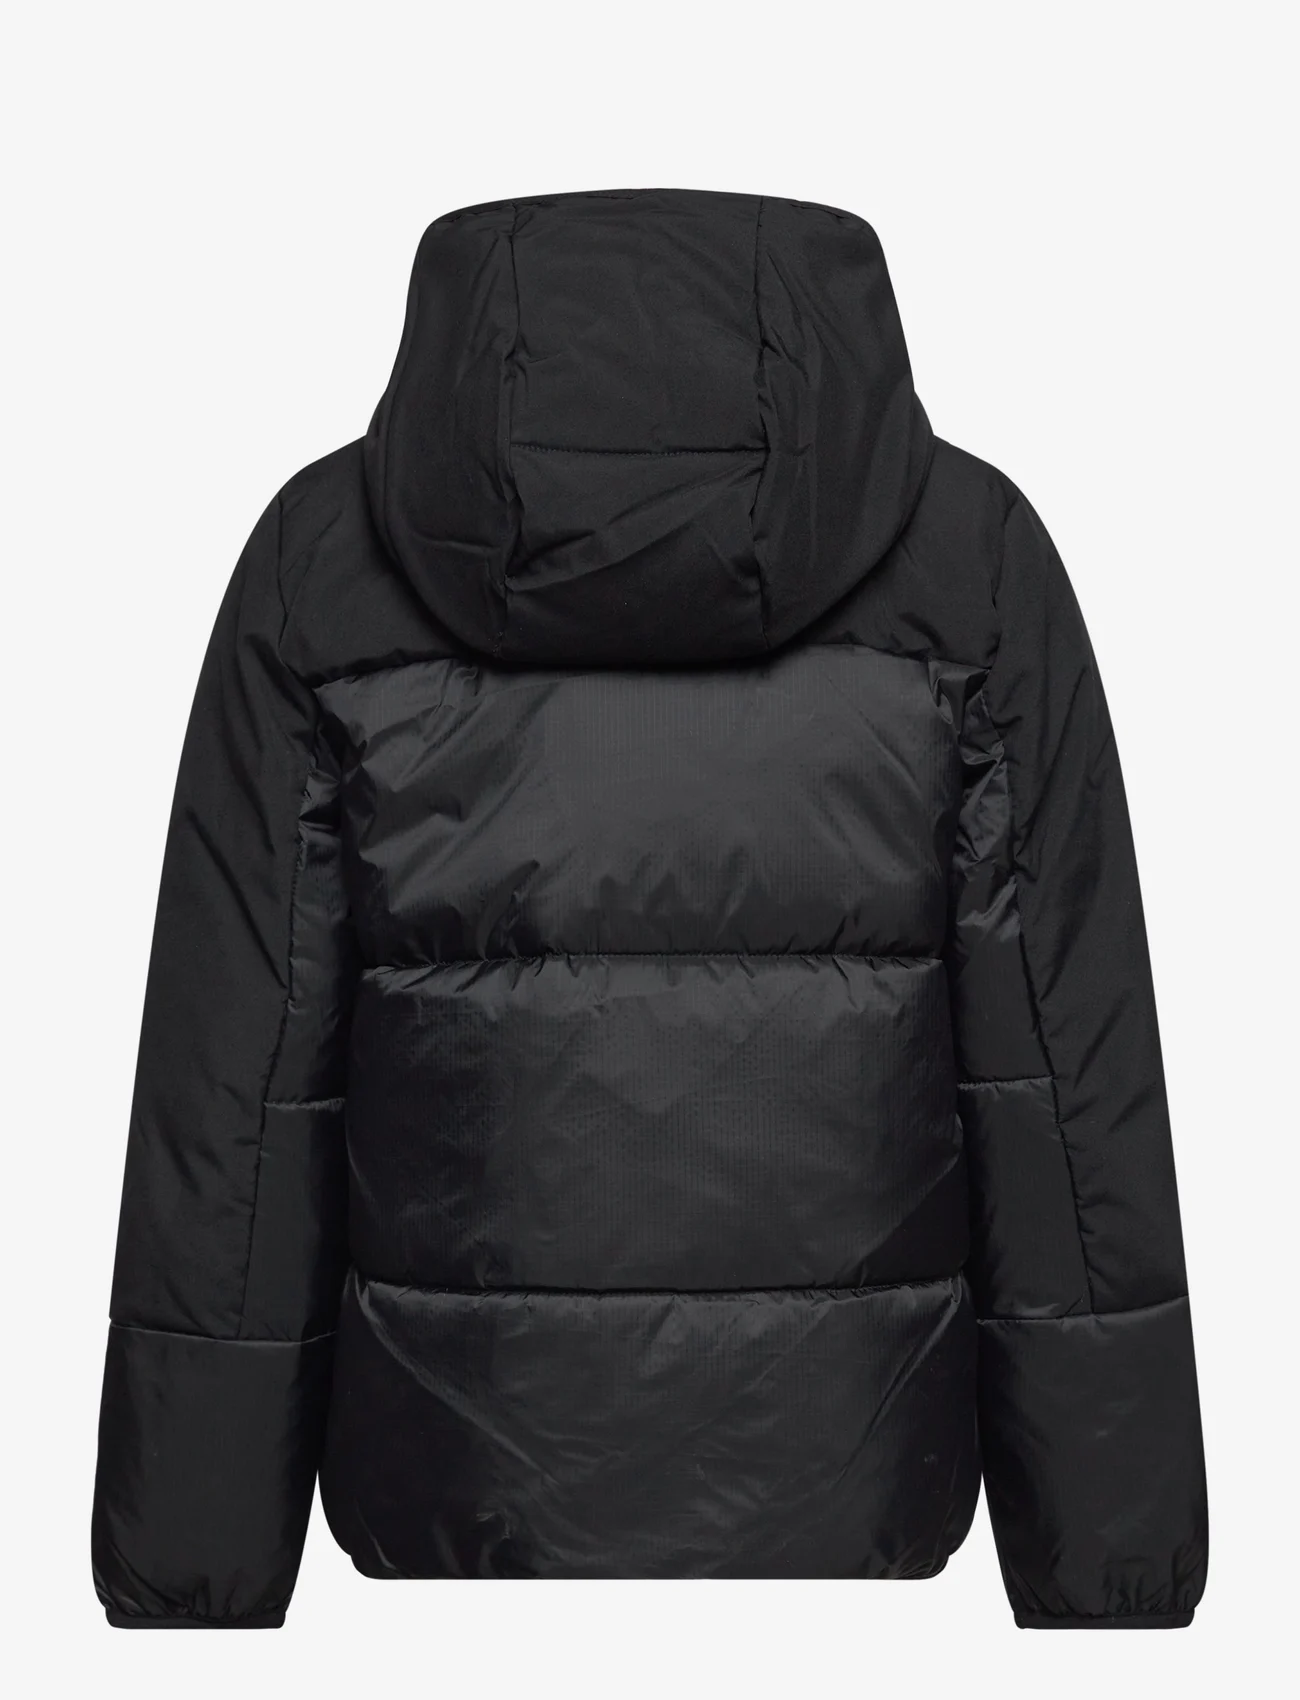 Champion - Hooded Jacket - isolierte jacken - black beauty - 1